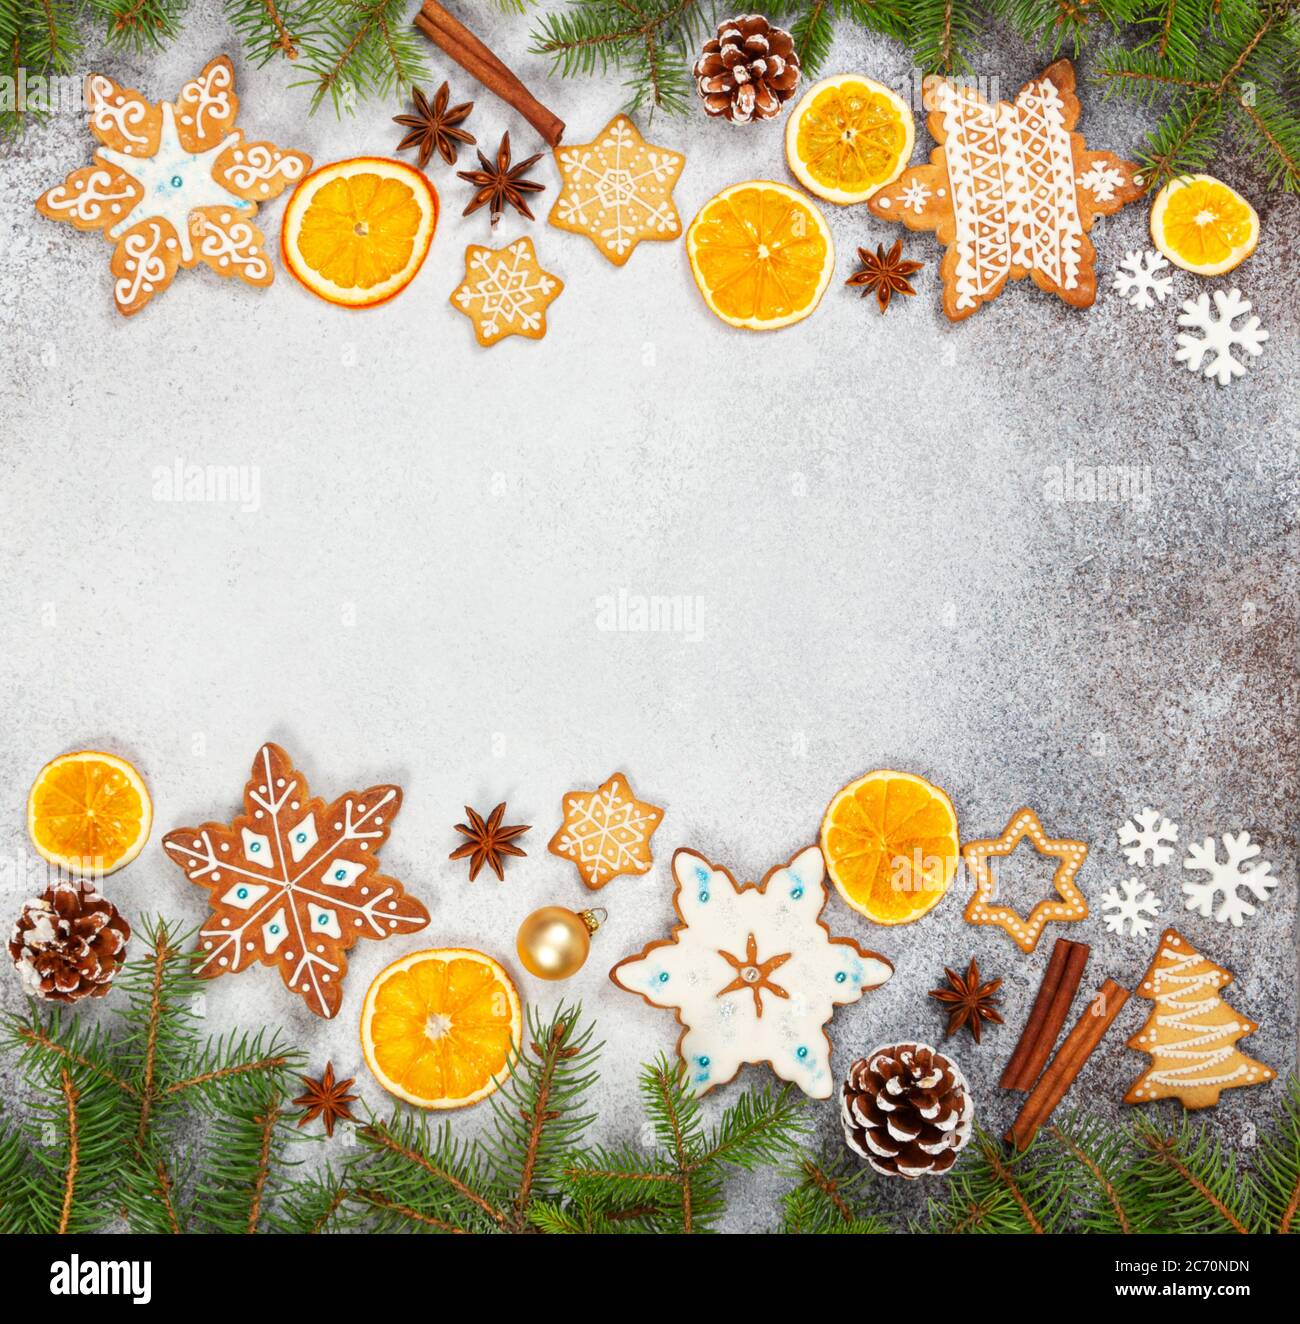 Biscotti allo zenzero natalizio in forma di fiocchi di neve, arancio secco, anice stellato e coni di abete su fondo di pietra grigia. Vista dall'alto. Simboli di Capodanno e C. Foto Stock